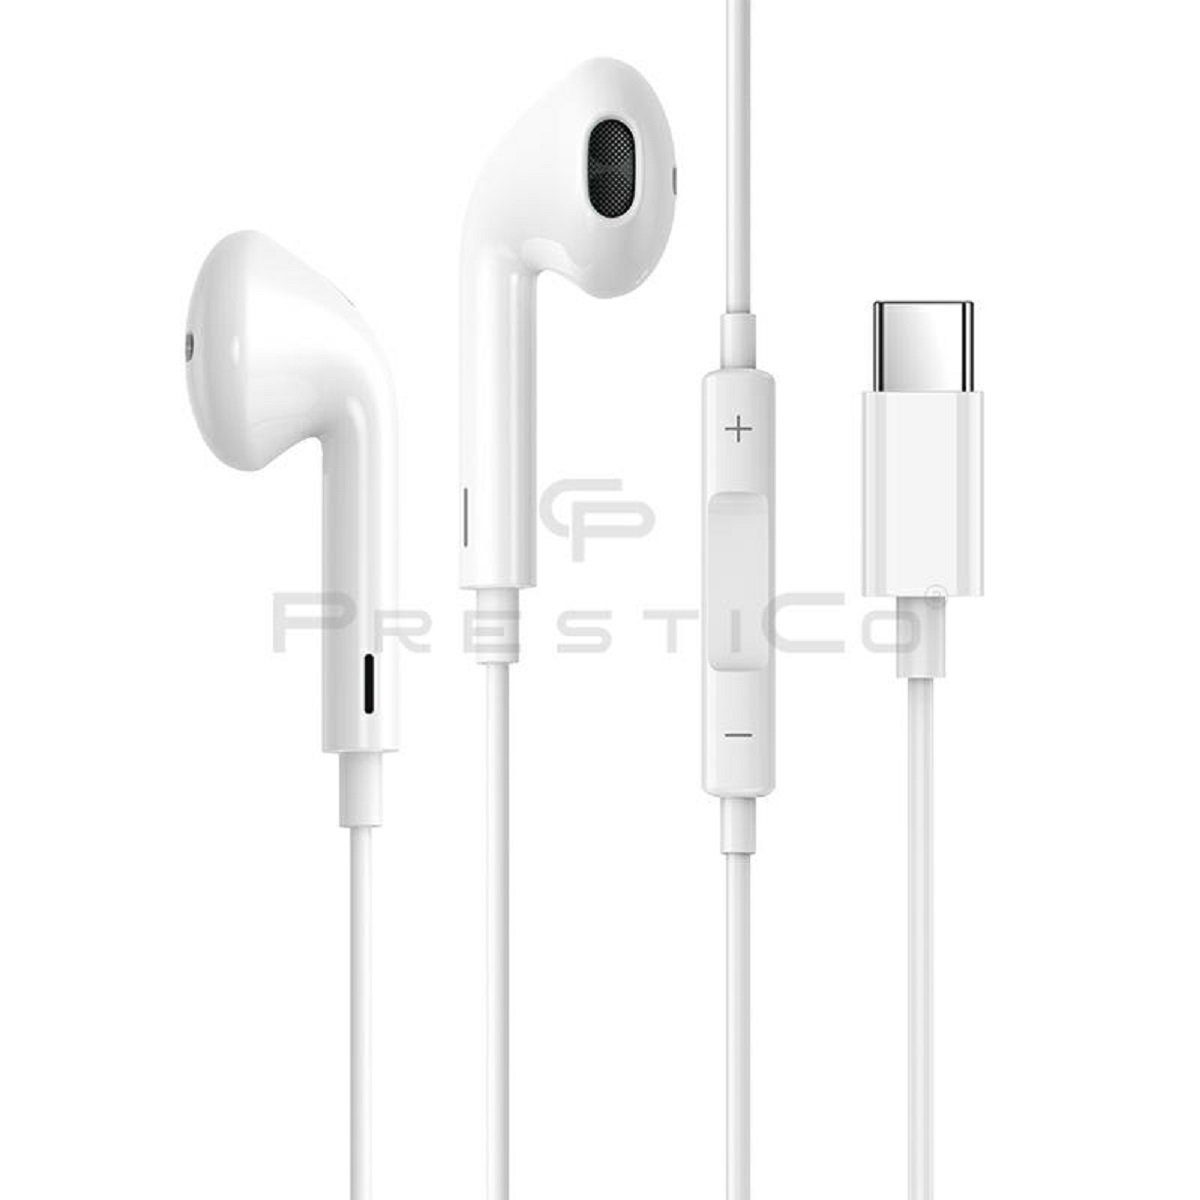 allen In-Ear-kopfhörer, USB Modellen, Weiß Fernbedienung mit mihrofon, Typ Universal, zu (Kabelgebunden, In-Ear-Kopfhörer PrestiCo Typ-C) HF3​ Kabe, Passen In-Ear C Kopfhörer und